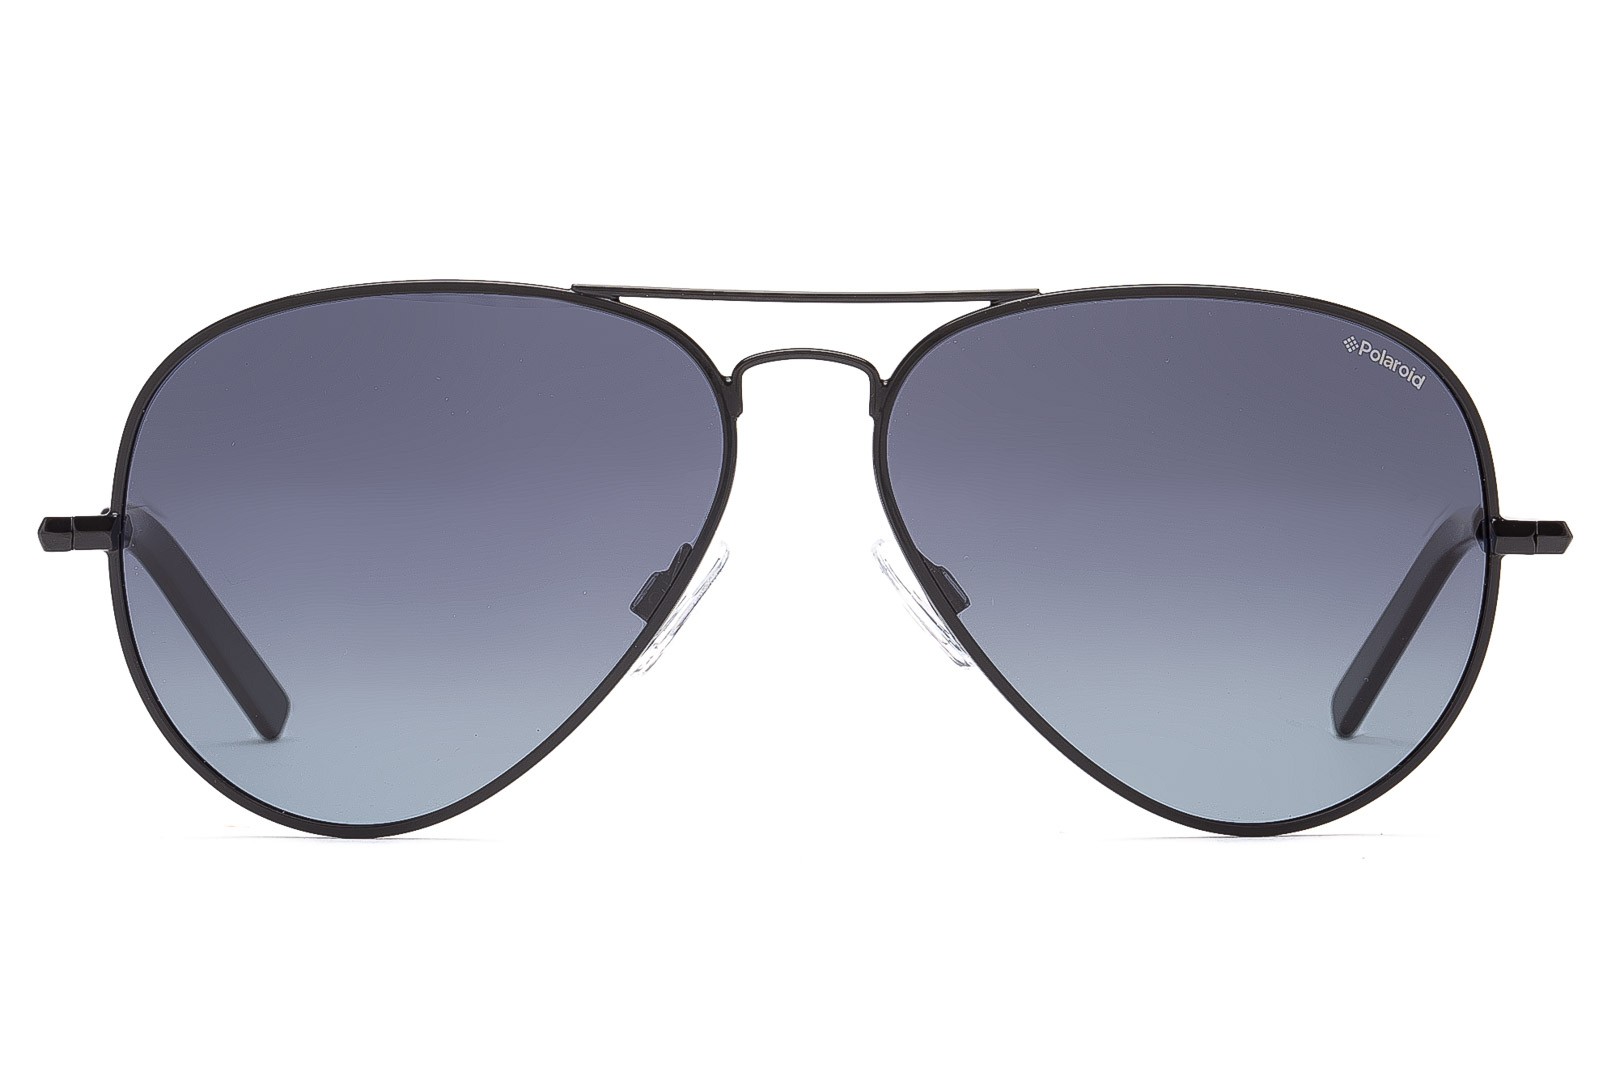 Occhiali da sole Sunglasses Polaroid PLD 1017 003 WJ NERO POLARIZZATO 100% 58 